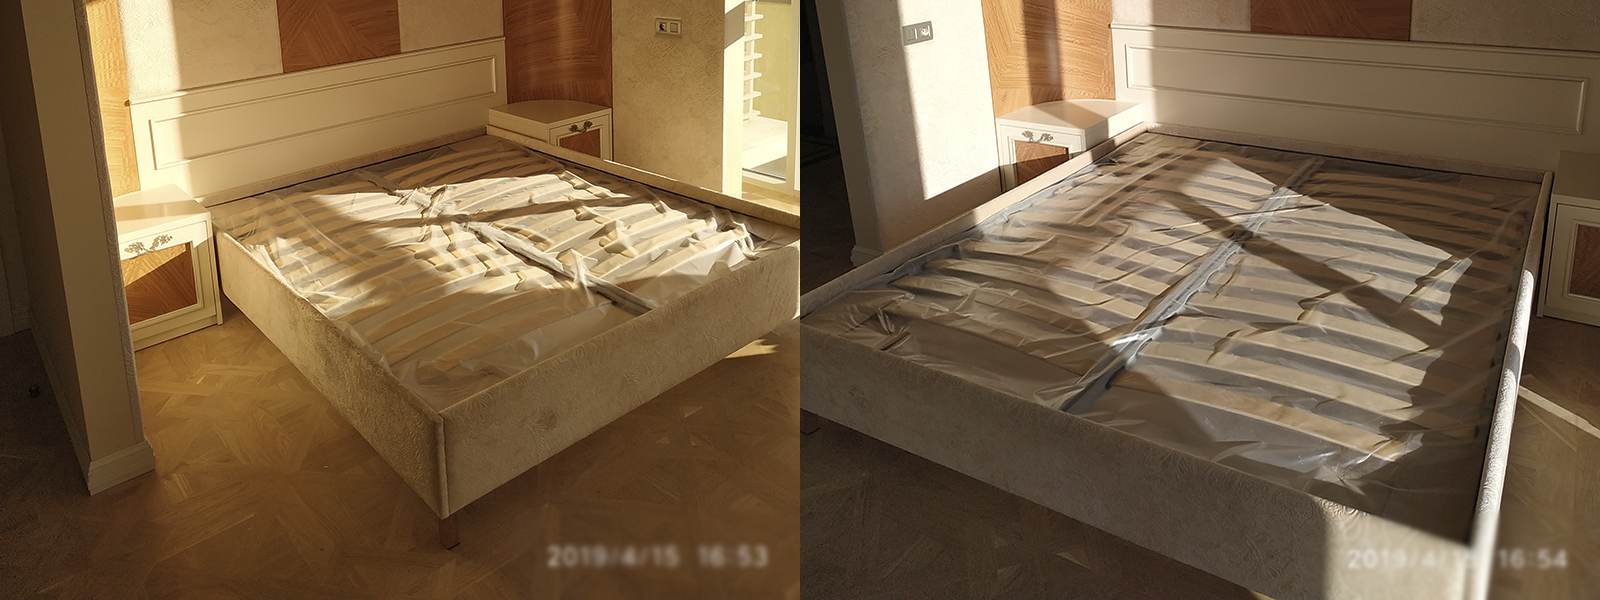 Обтяжка кровати в Керчи недорого на дому и в мастерской, высокое качество тканей